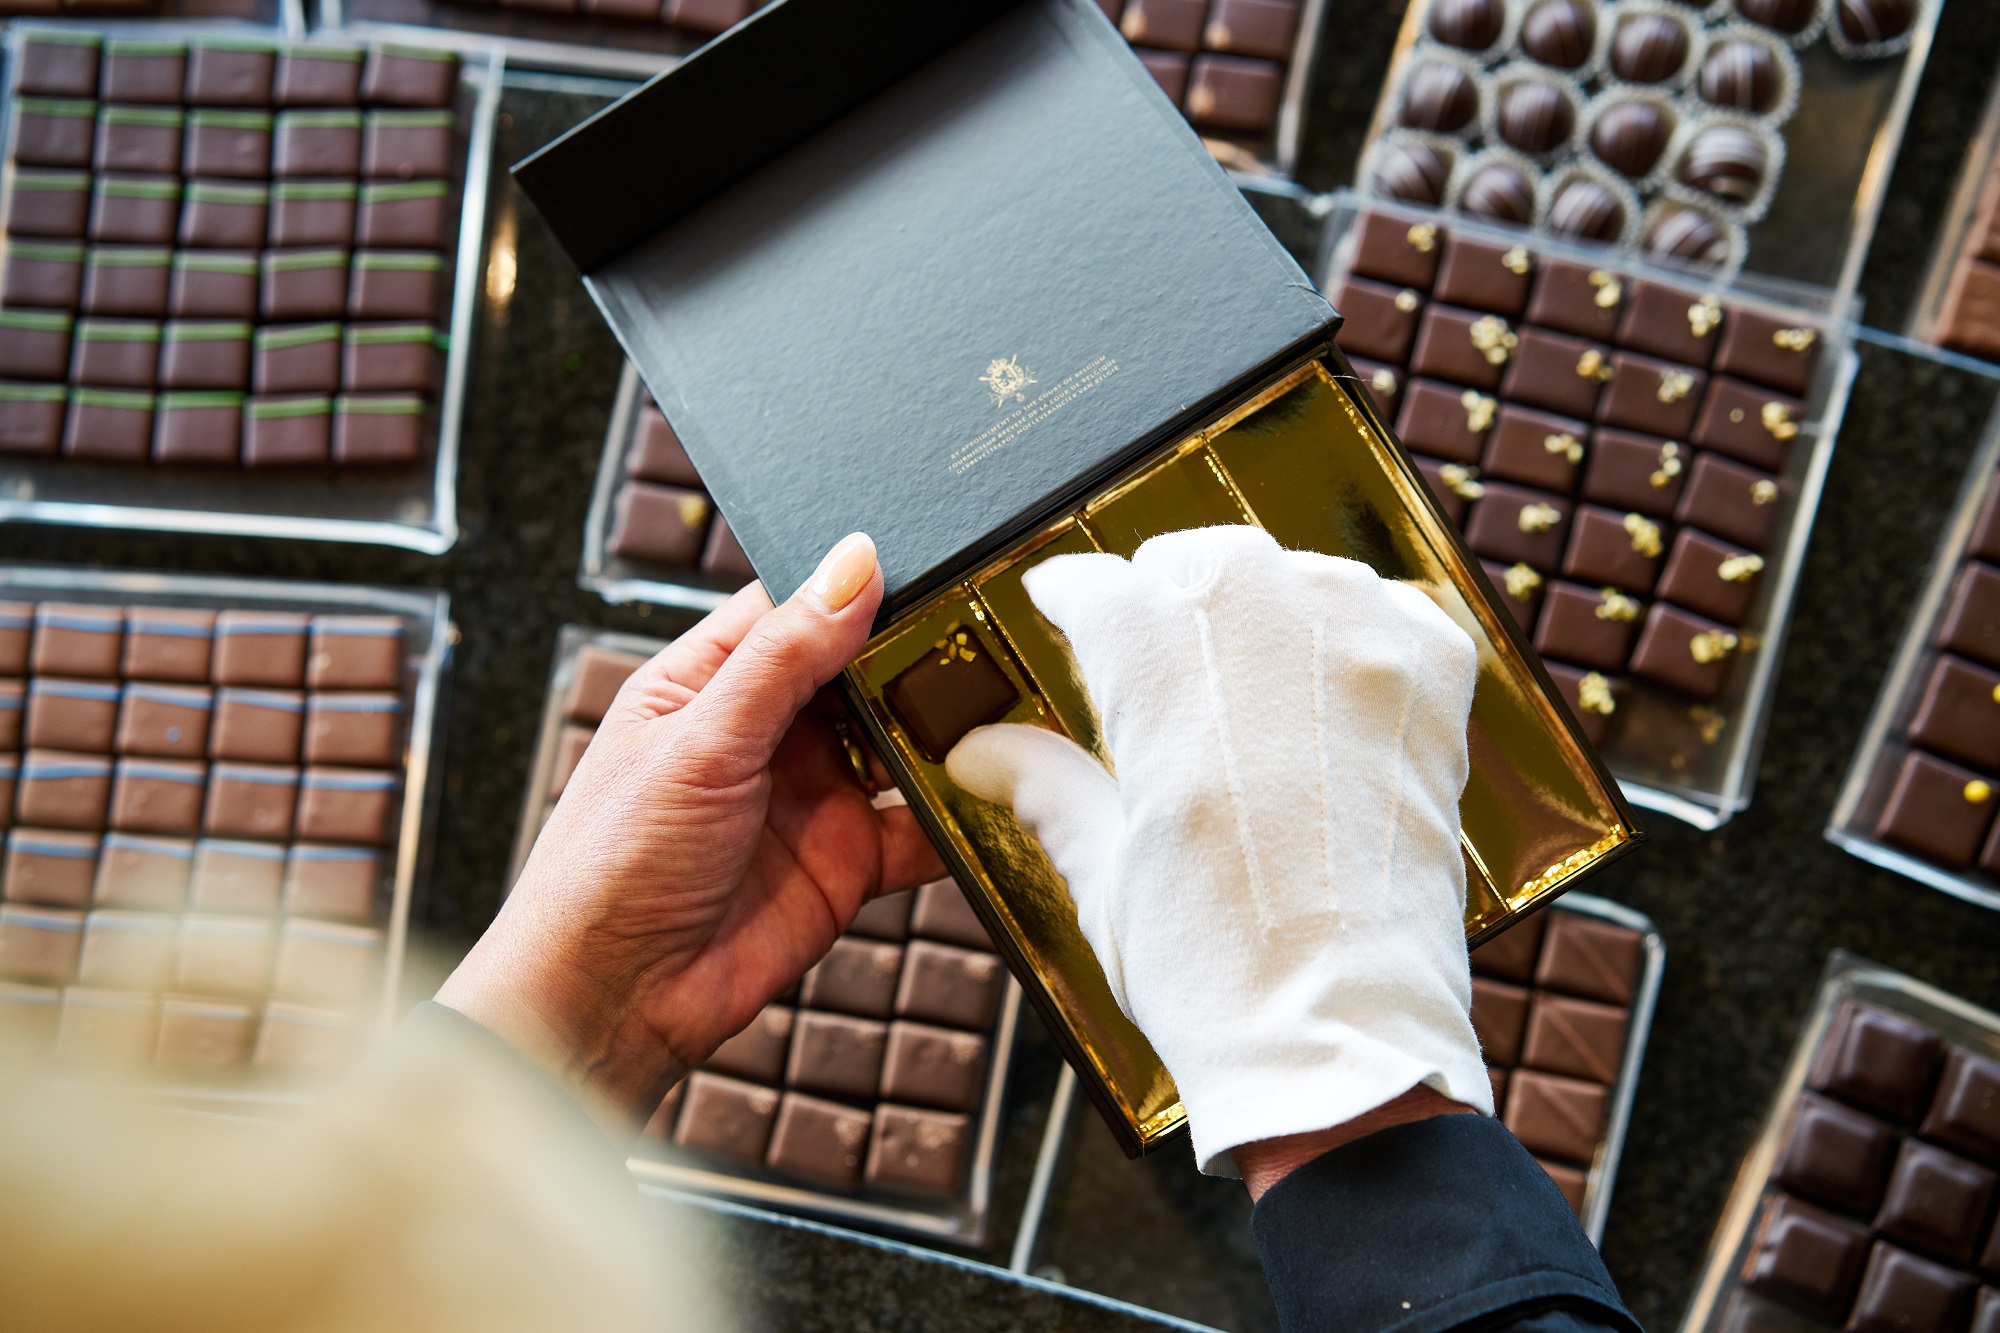 Herman Van Dender's chocolate